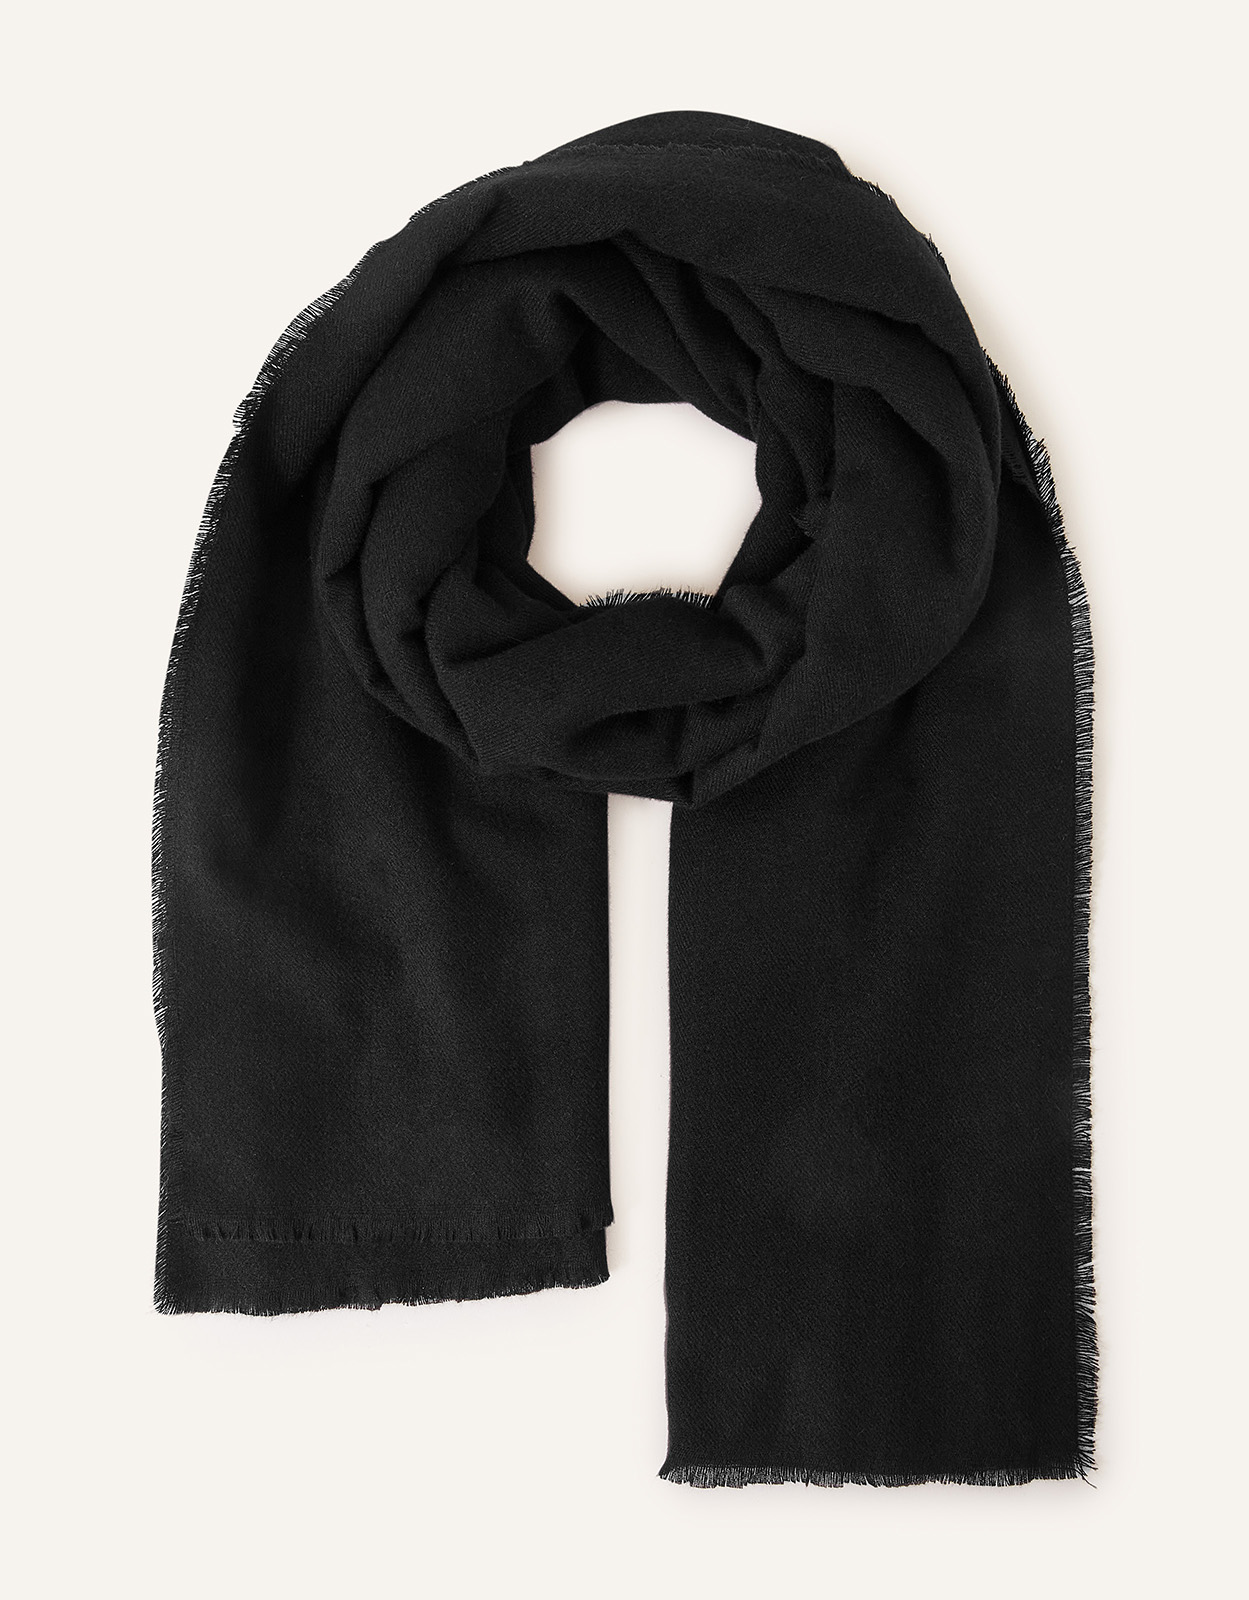 Accessorize Women's Black Grace Super-Soft Blanket Scarf, Size: 100x180cm